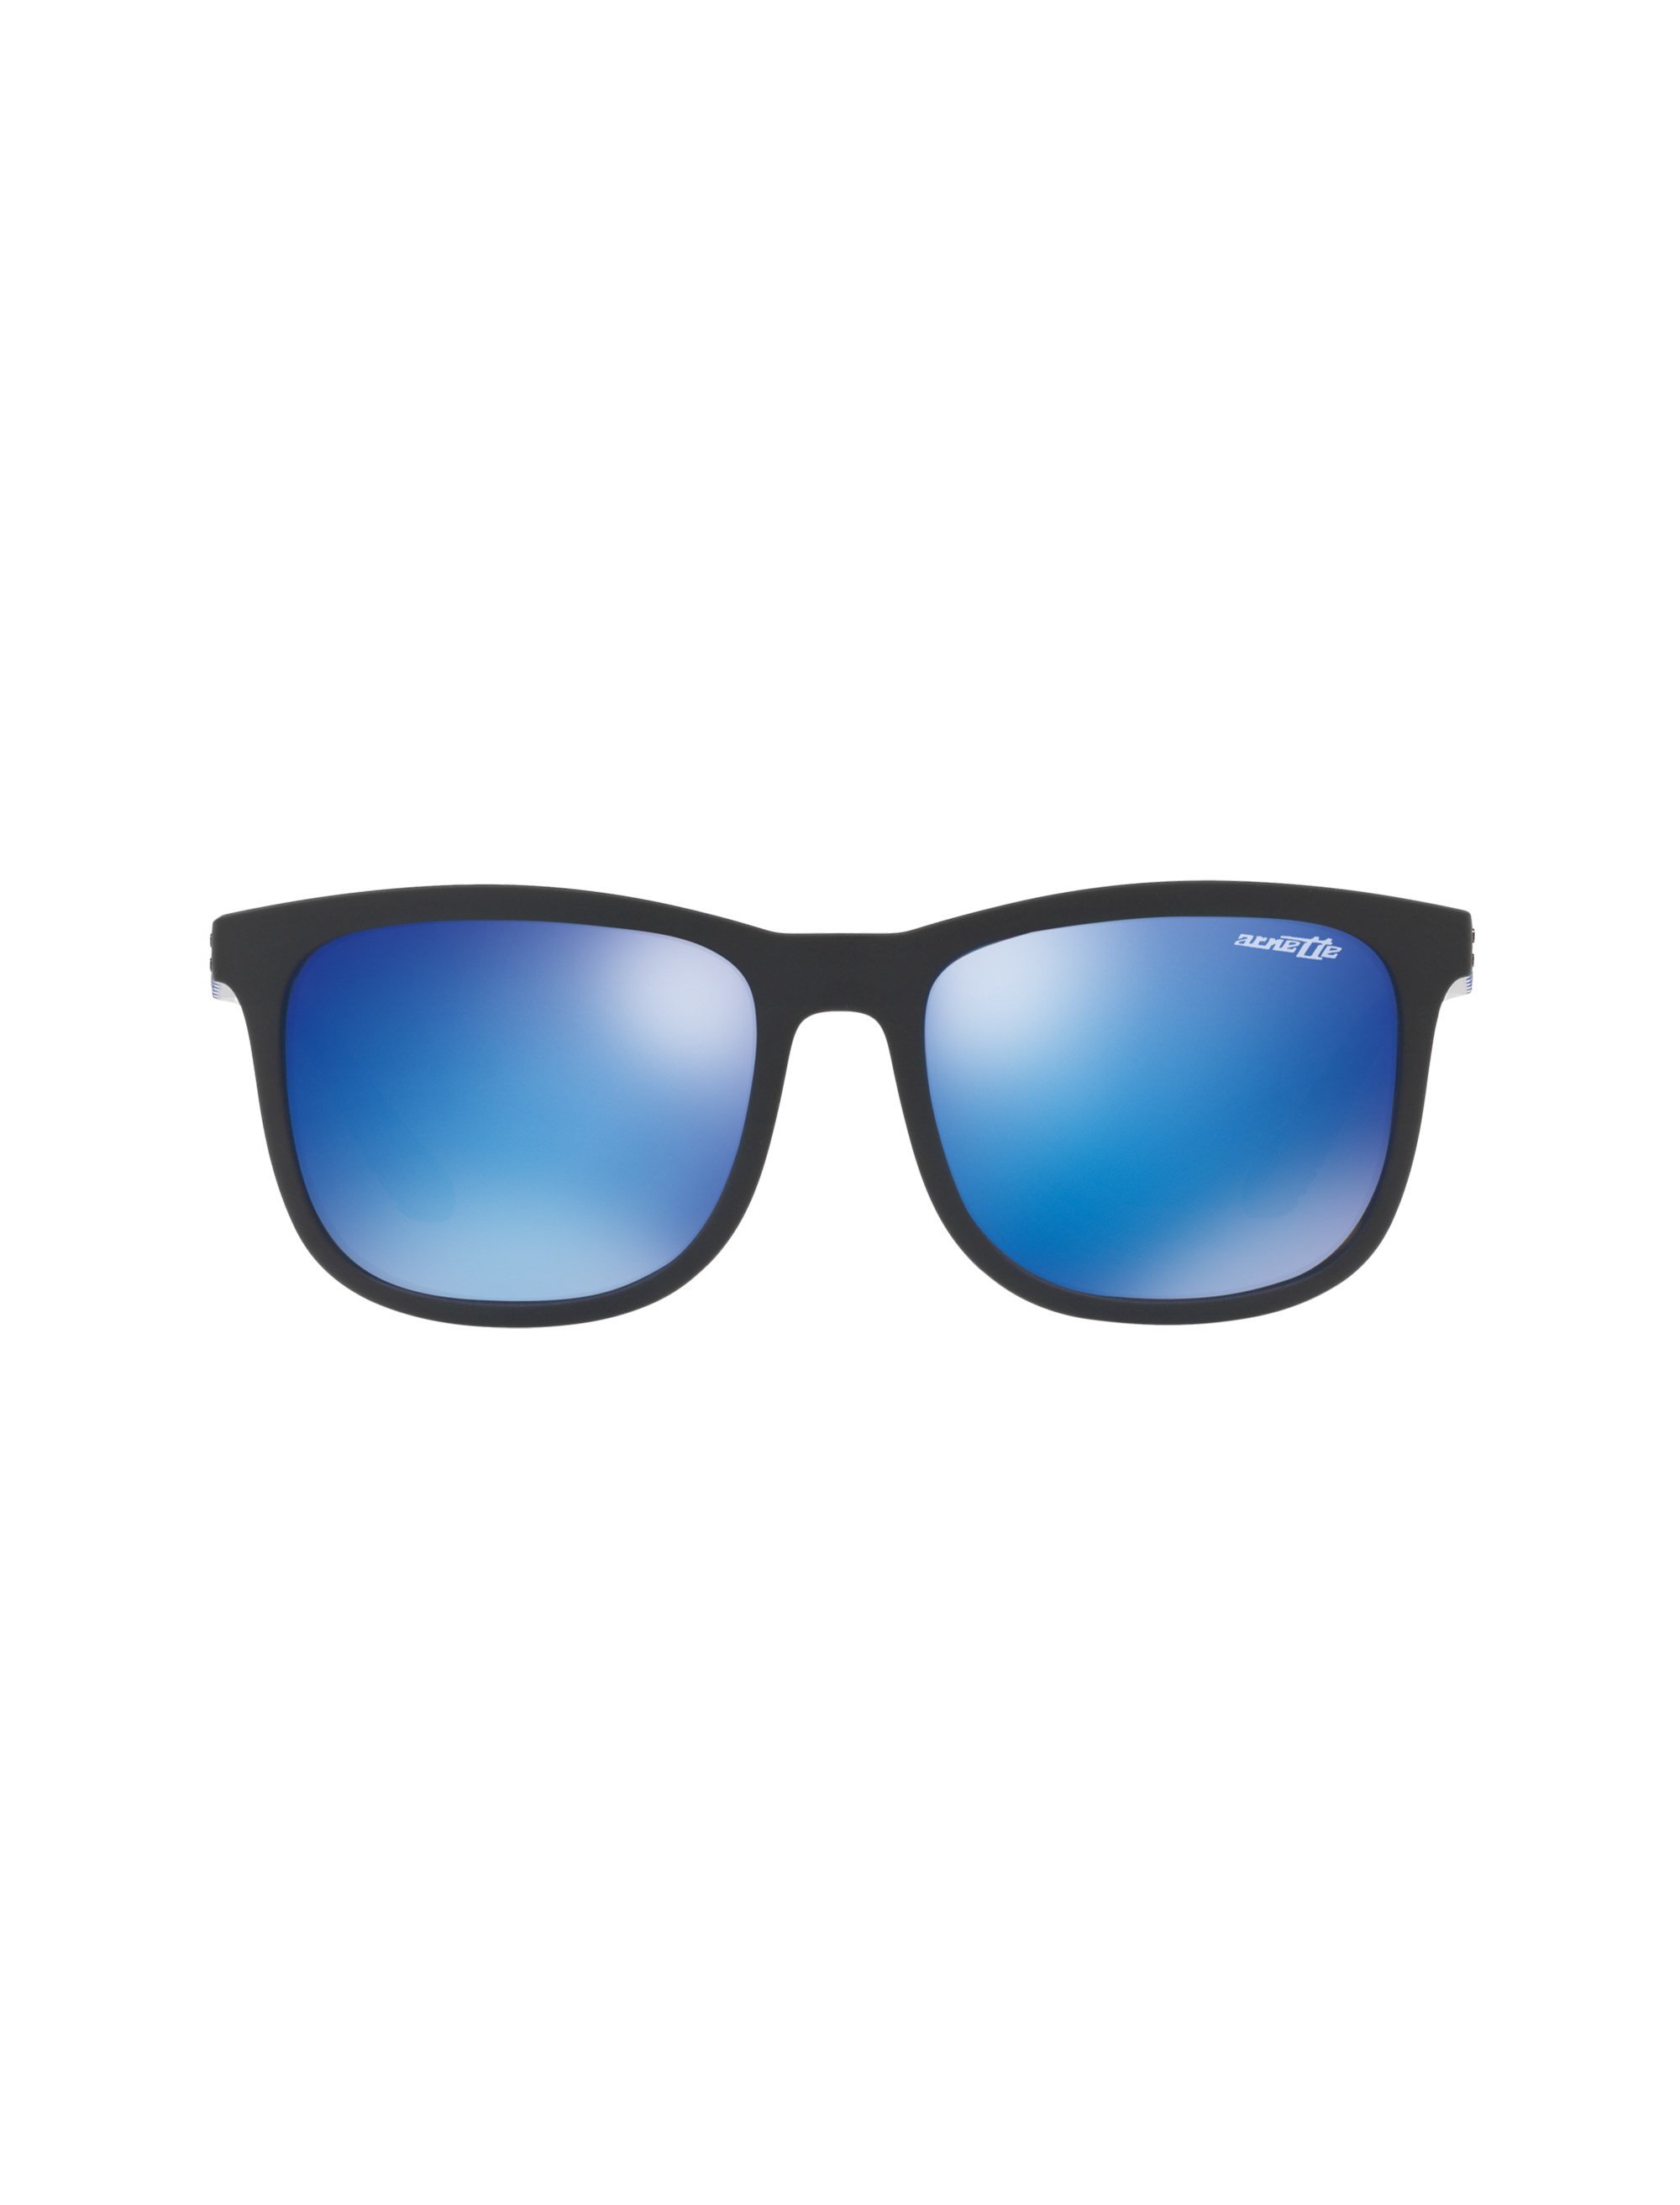 عینک آفتابی ویفرر مردانه - آرنت - مشکي و آبي - 1